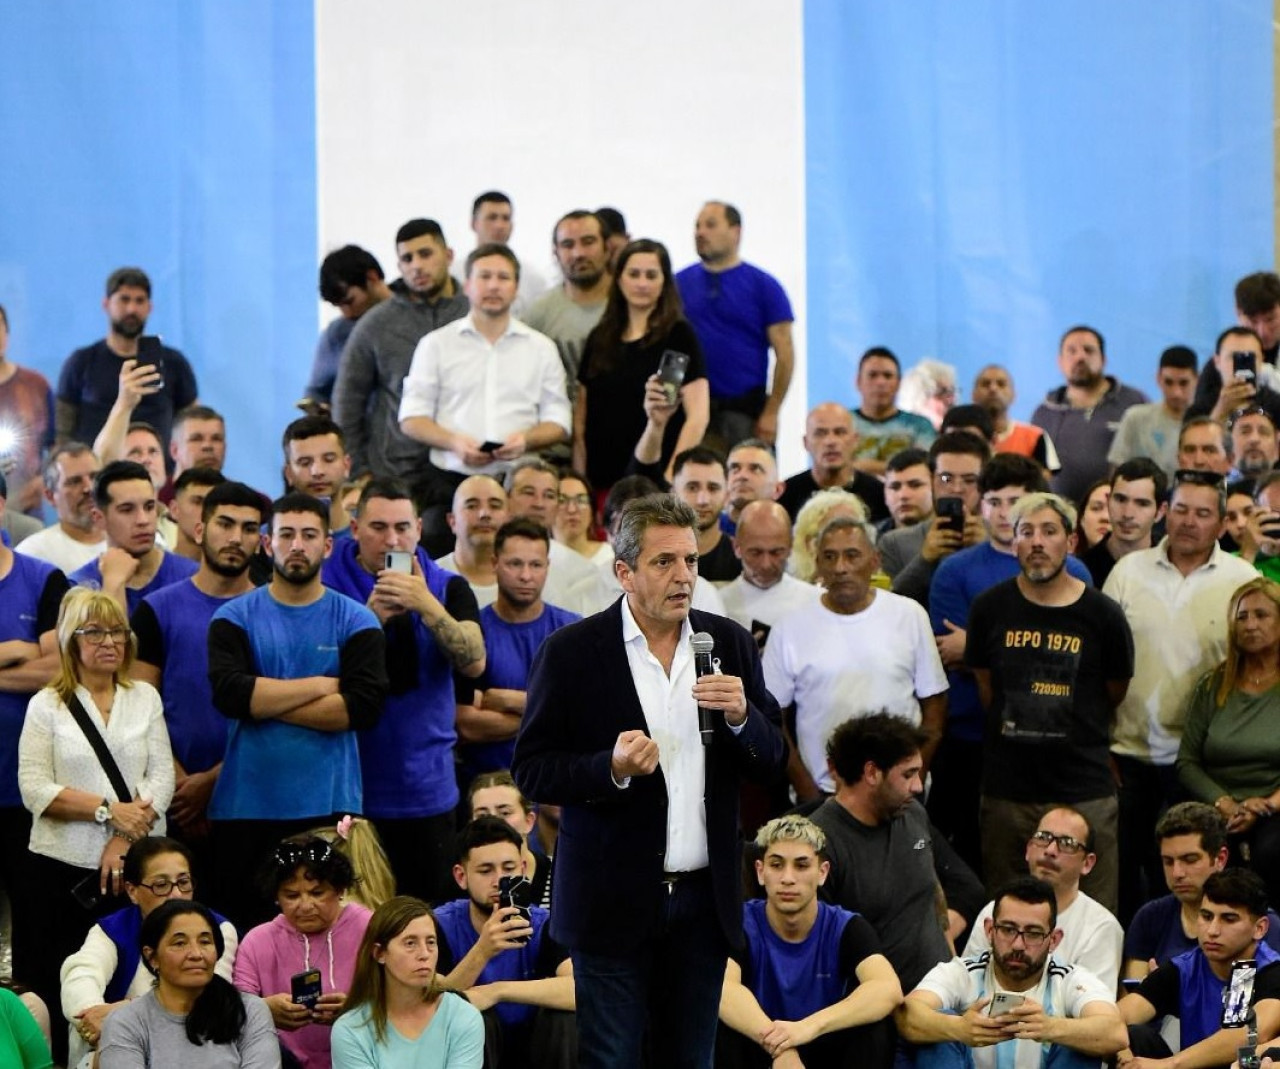 El candidato presidencial de Unión por la Patria, Sergio Massa, cierra su campaña en una fábrica en Pilar. Foto NA